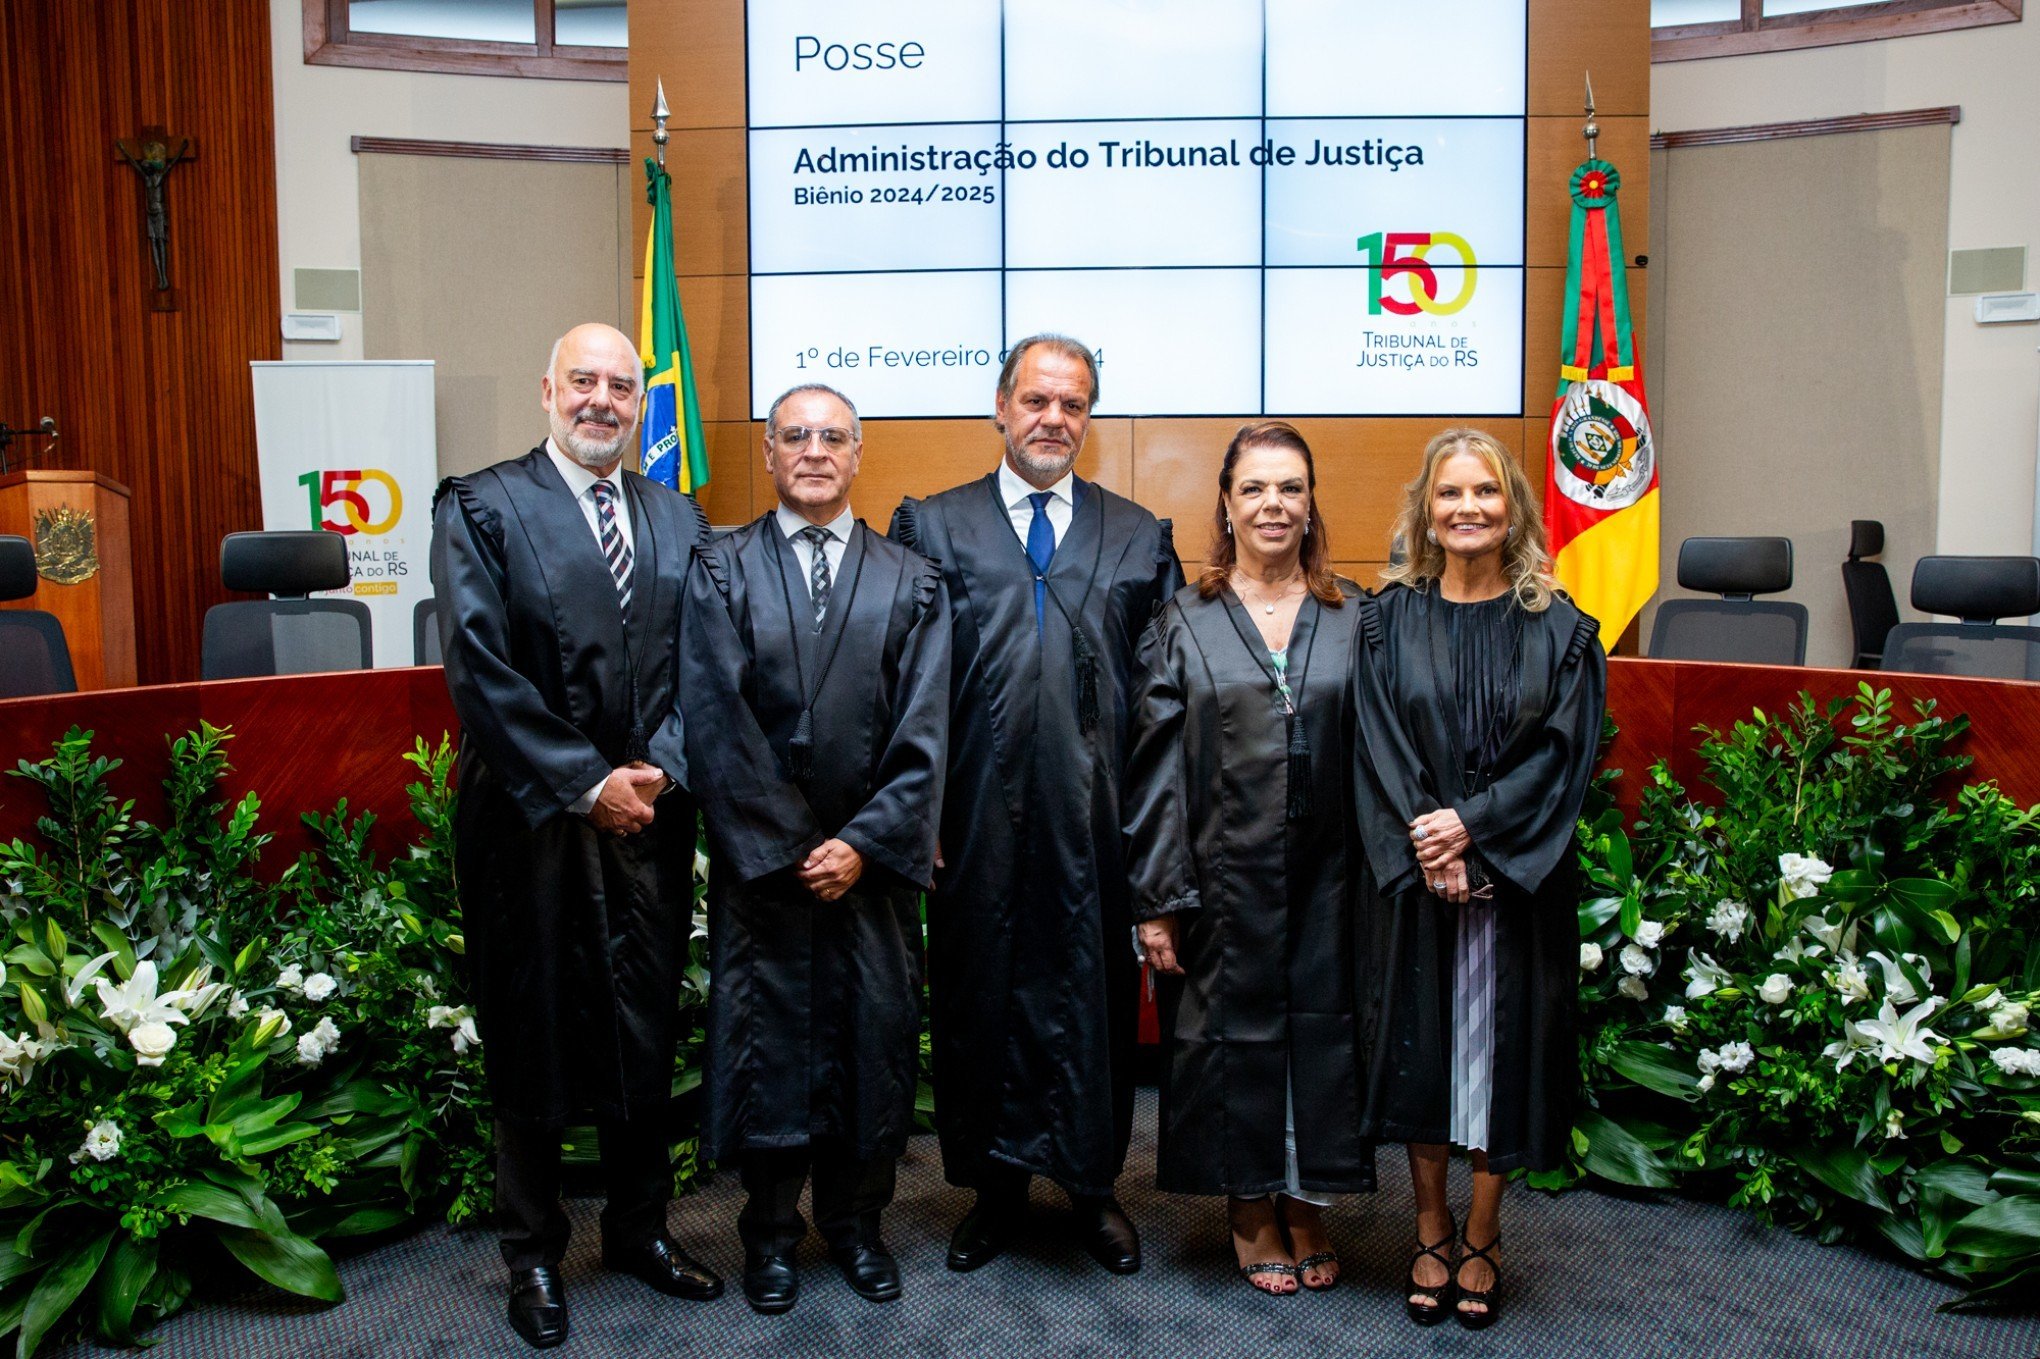 Presidente Alberto (C), os Vices Ícaro ( ao lado dele), Sérgio (E) e Lusmary (ao lado do Presidente) e a Corregedora Fabiane (D), logo após a posse ocorrida no Plenário do TJRS | abc+